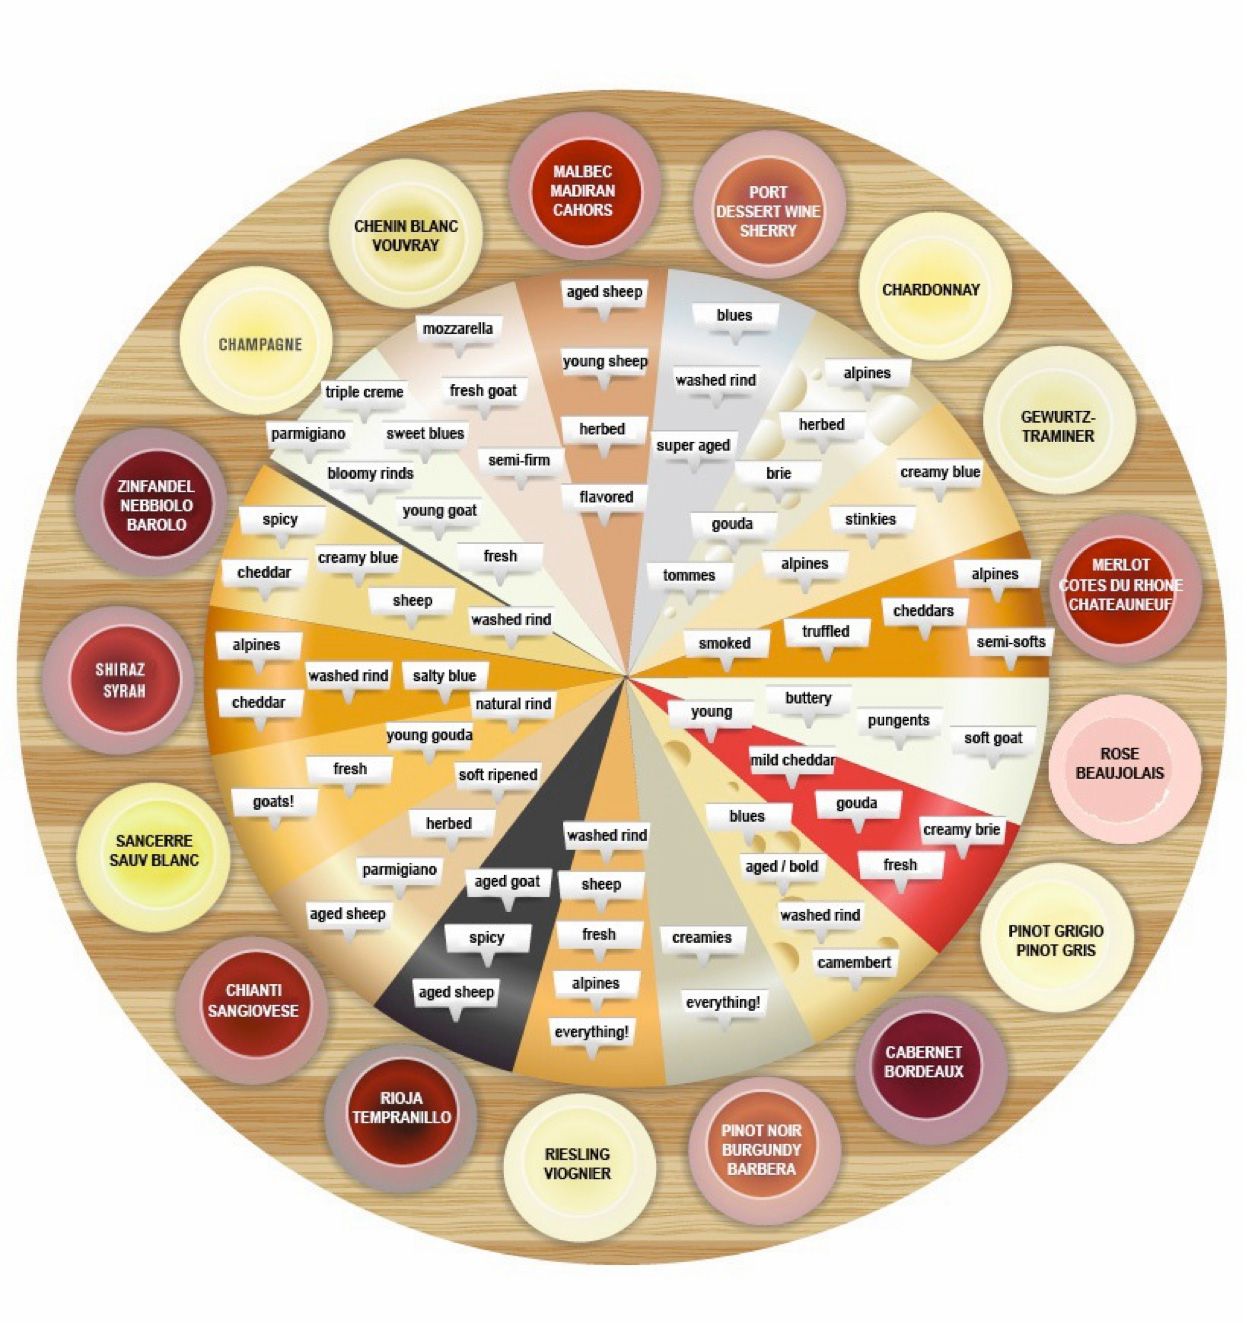 wine and cheese pairing chart